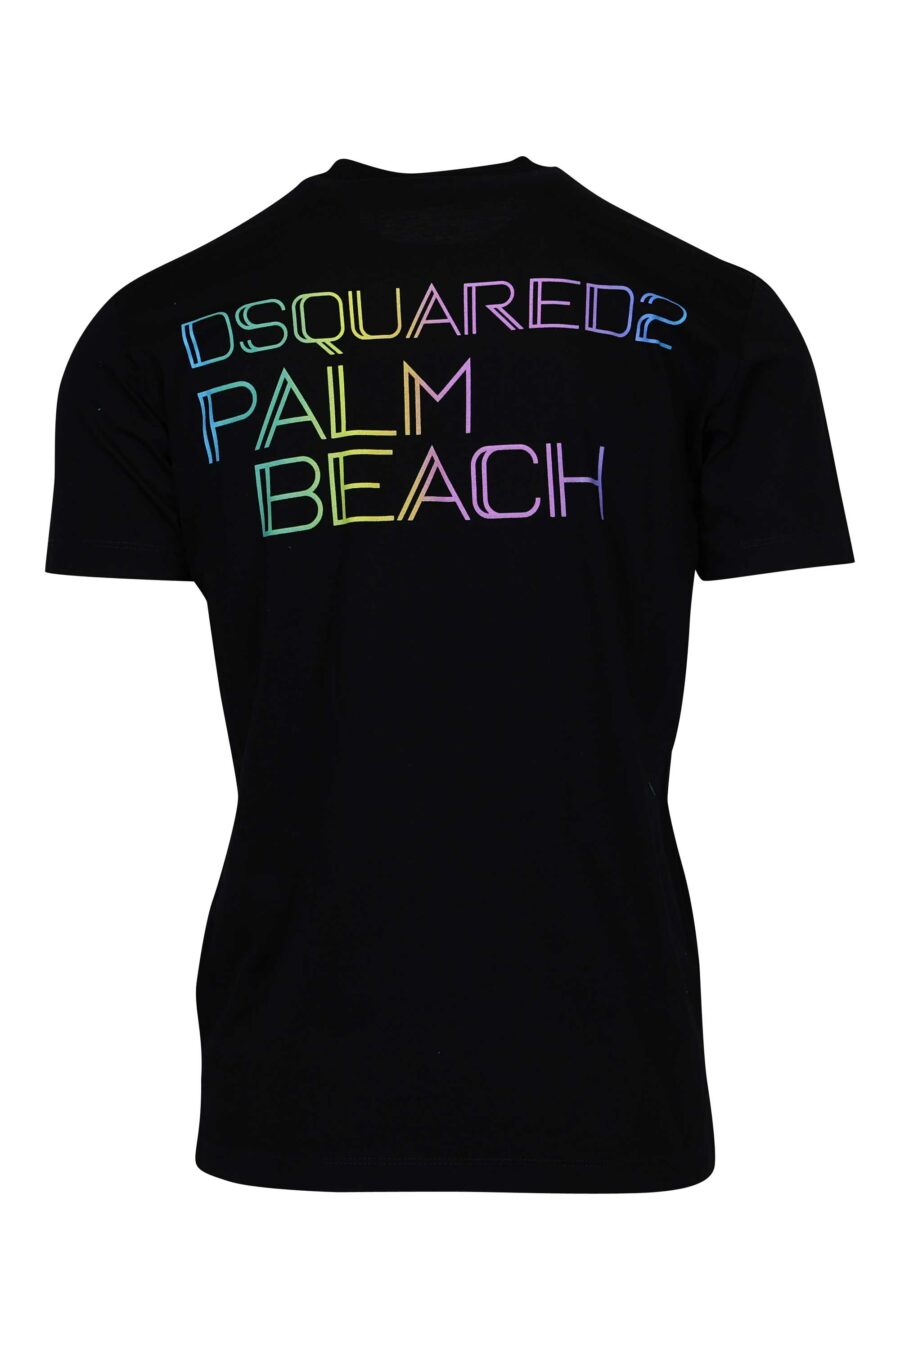 T-shirt noir avec mini-logo multicolore sur le côté - 8054148447649 1